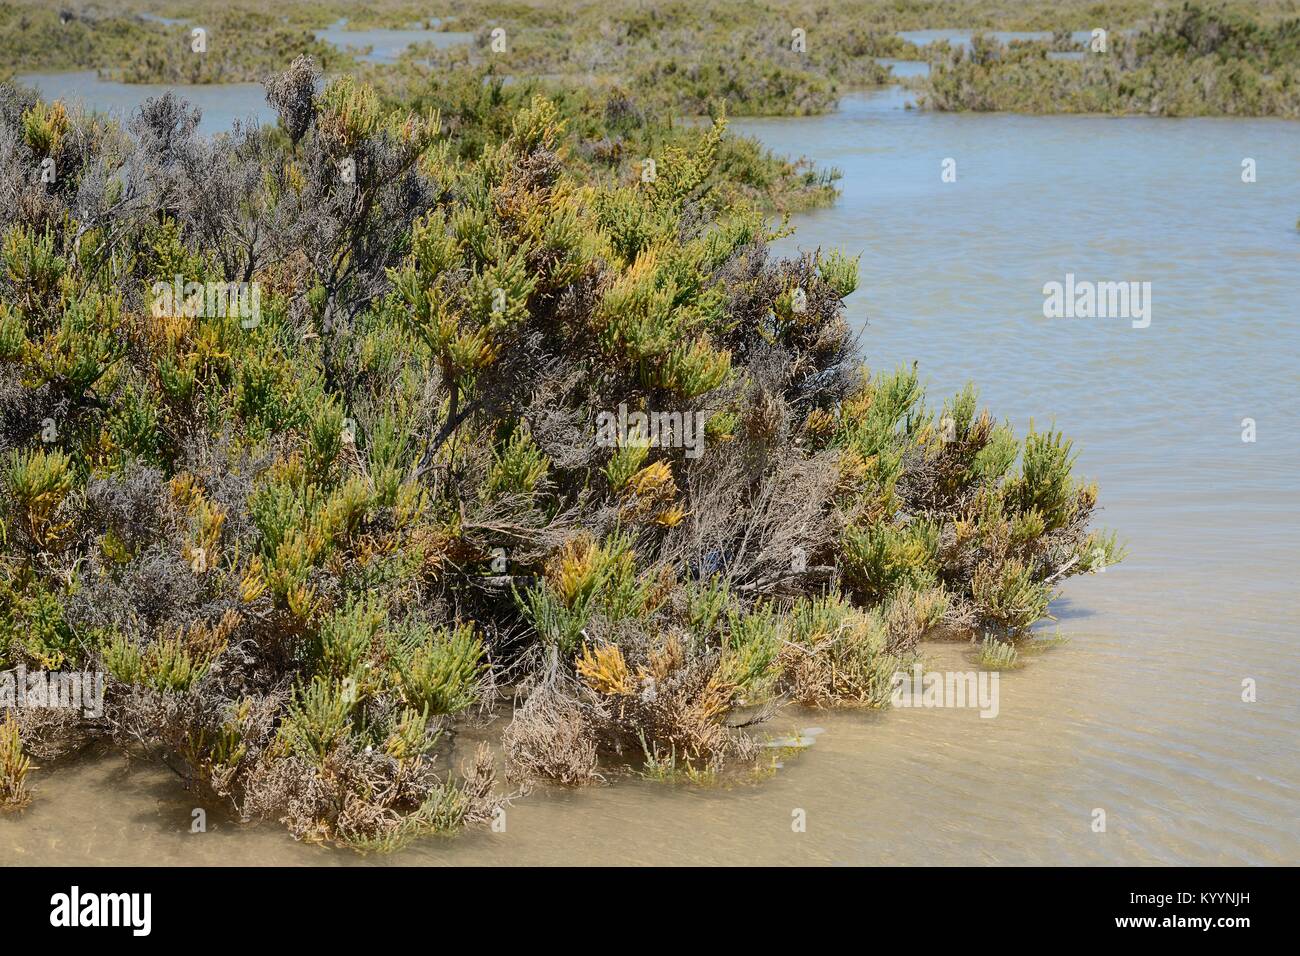 Glaucas glasswort (Arthrocnemum macrostachyum) arbustos parcialmente sumergidos por una marea alta en una laguna costera, Sotavento, Fuerteventura, Islas Canarias. Foto de stock